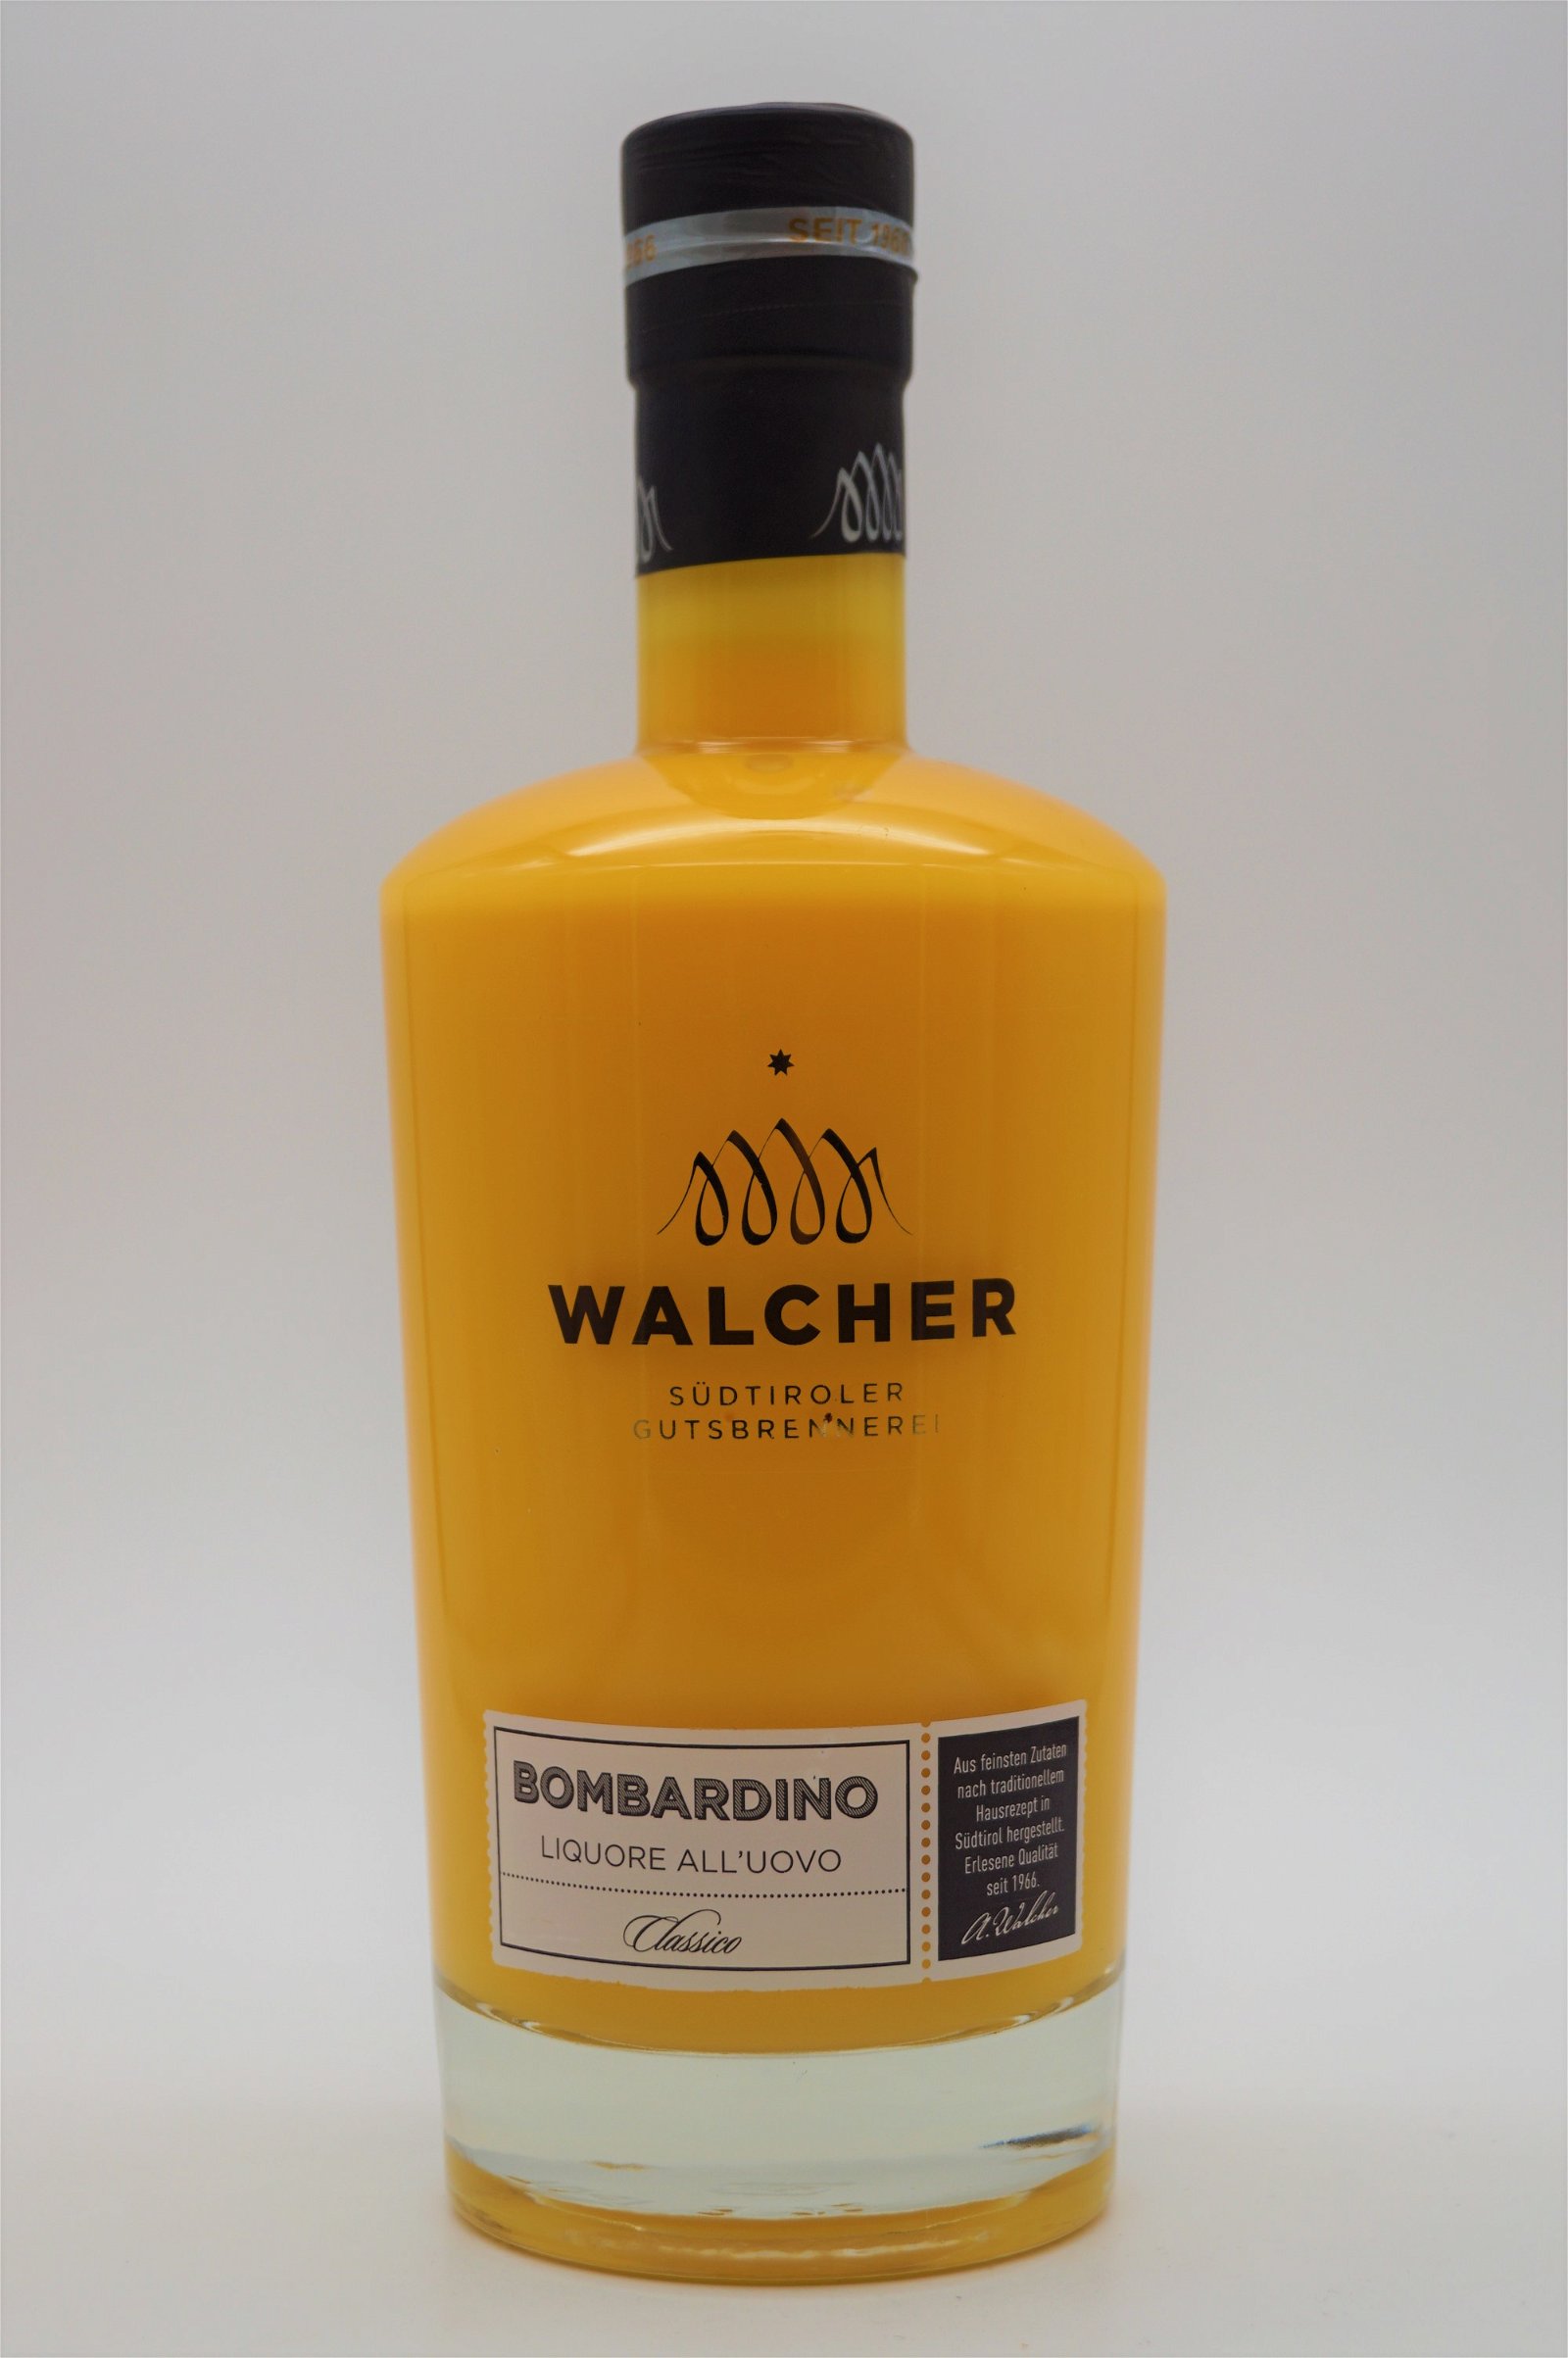 Walcher Bombardino Liquore alluovo Classico